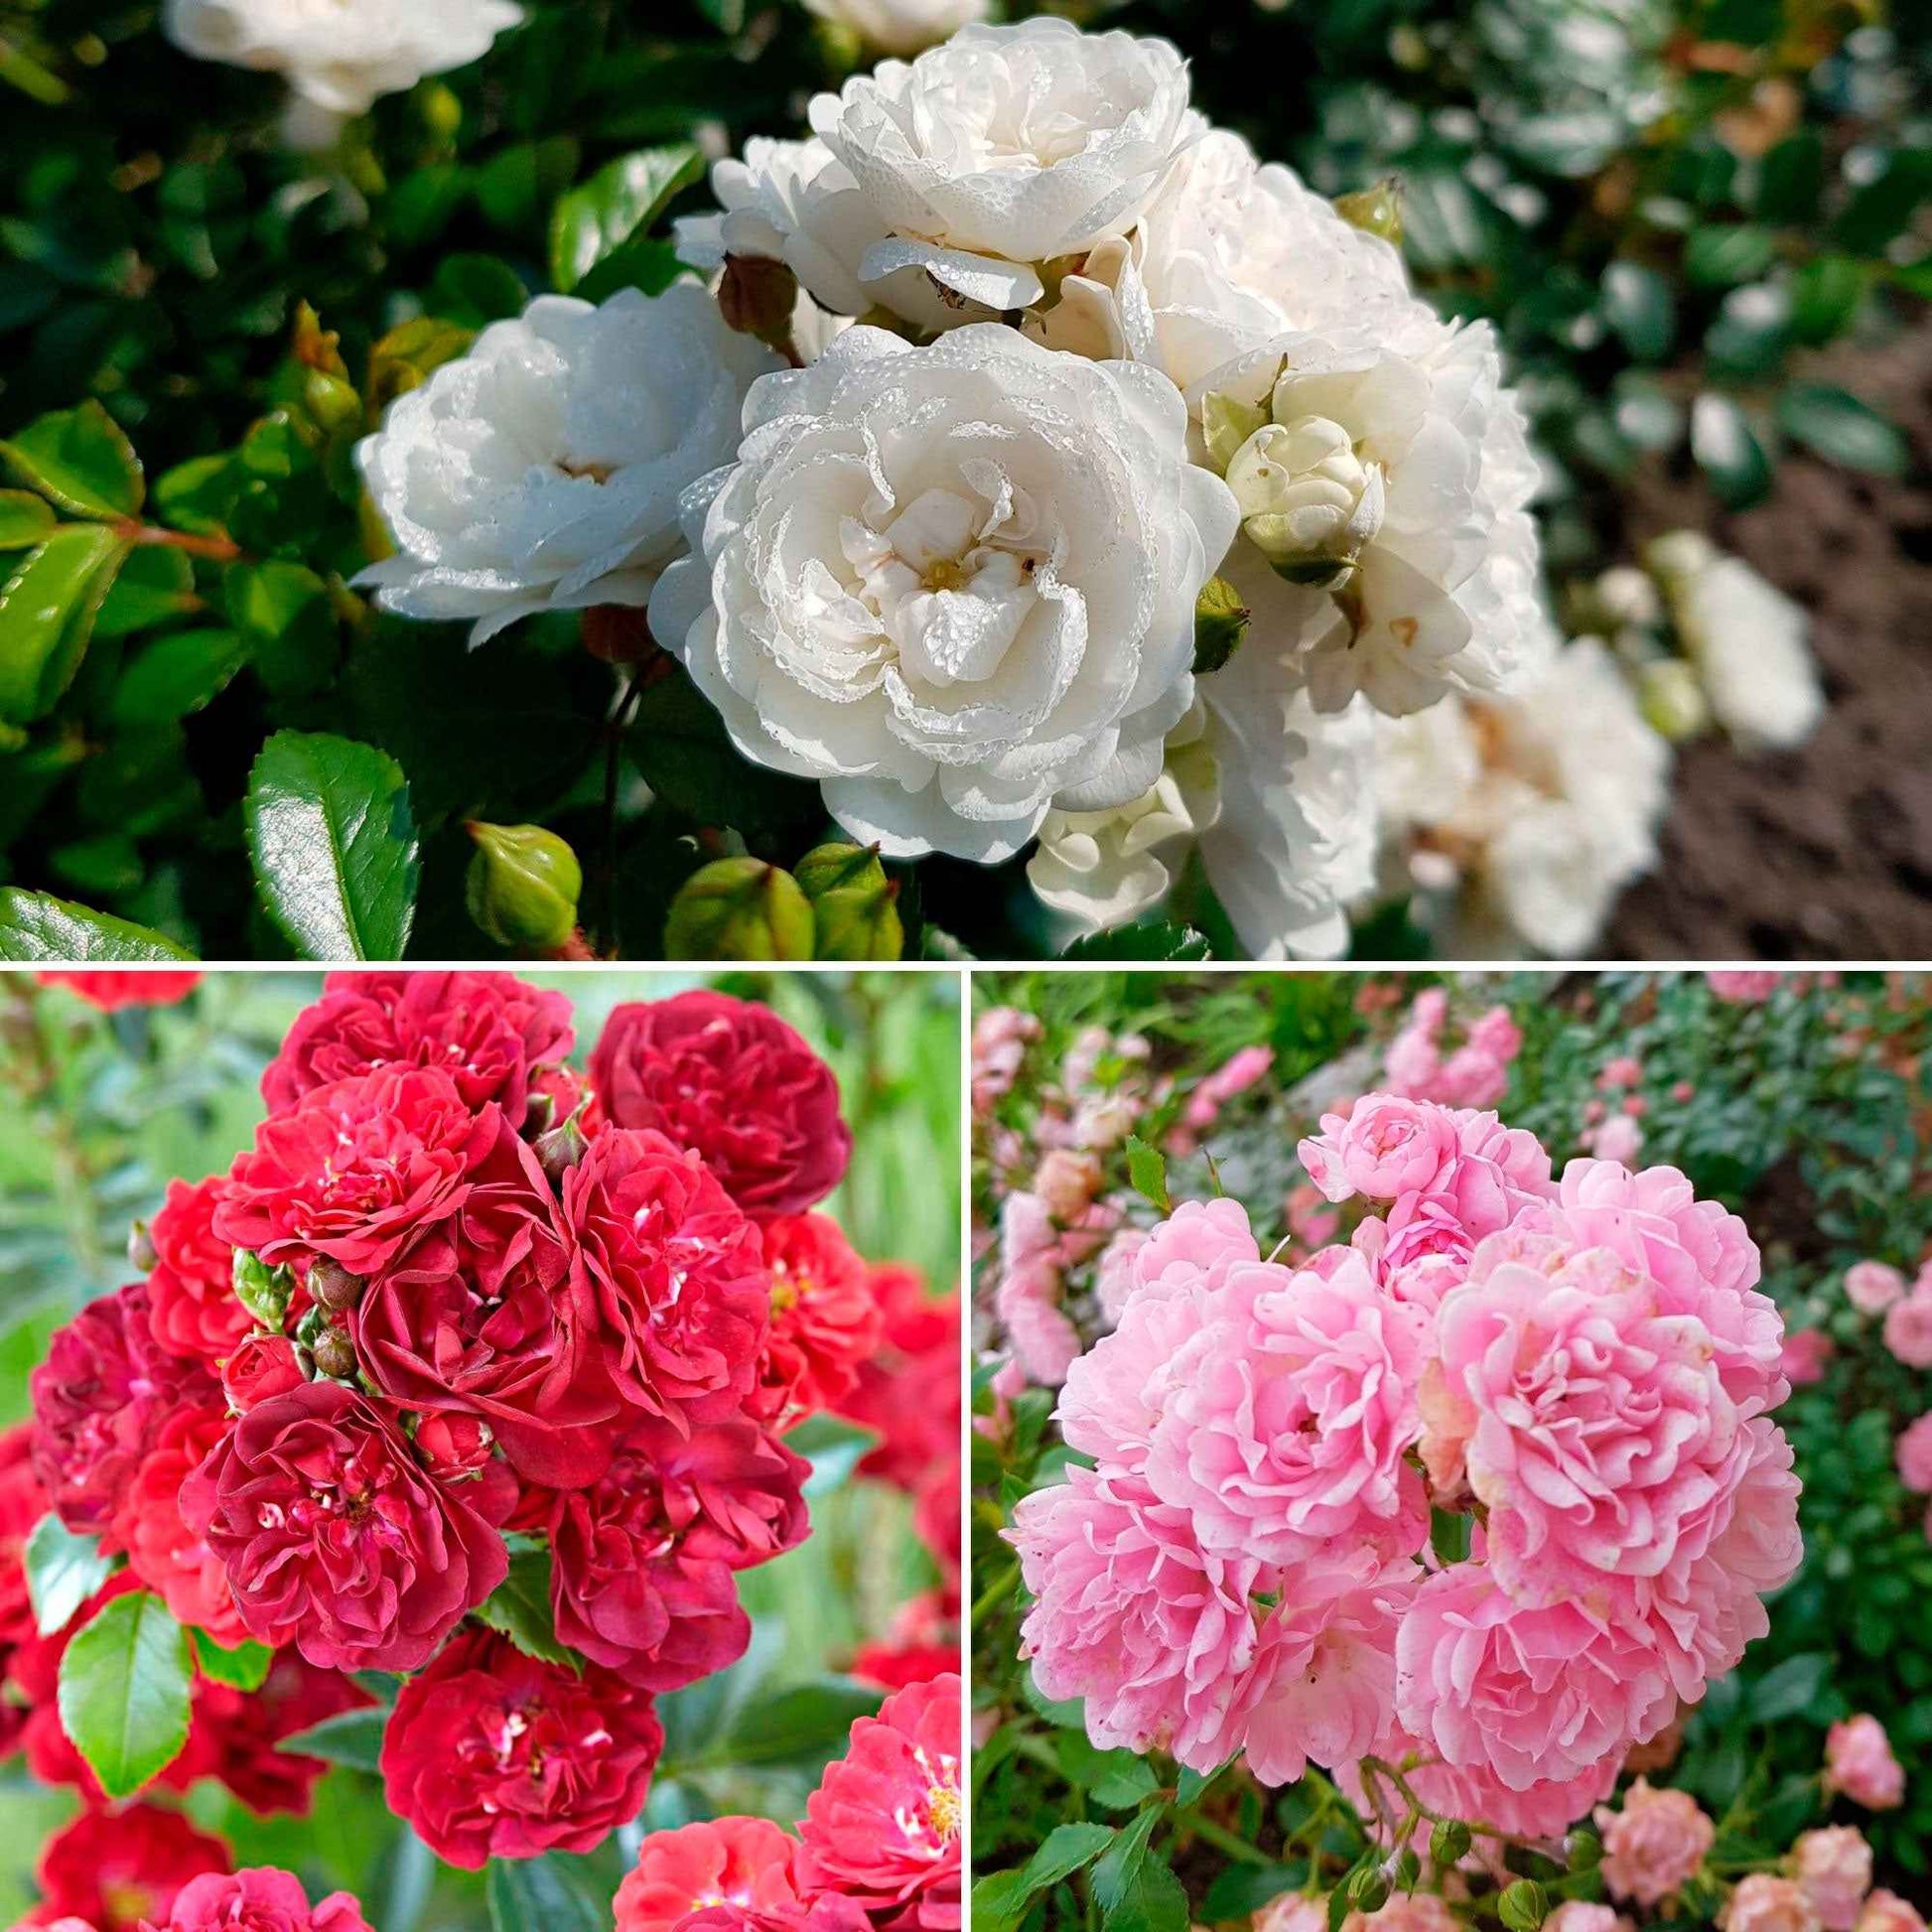 3x Mix aus bodendeckenden Rosen 'Bodendecker' Weiß-Rot-Rosa  - Wurzelnackte Pflanzen - Winterhart - Bodendeckende Rosen